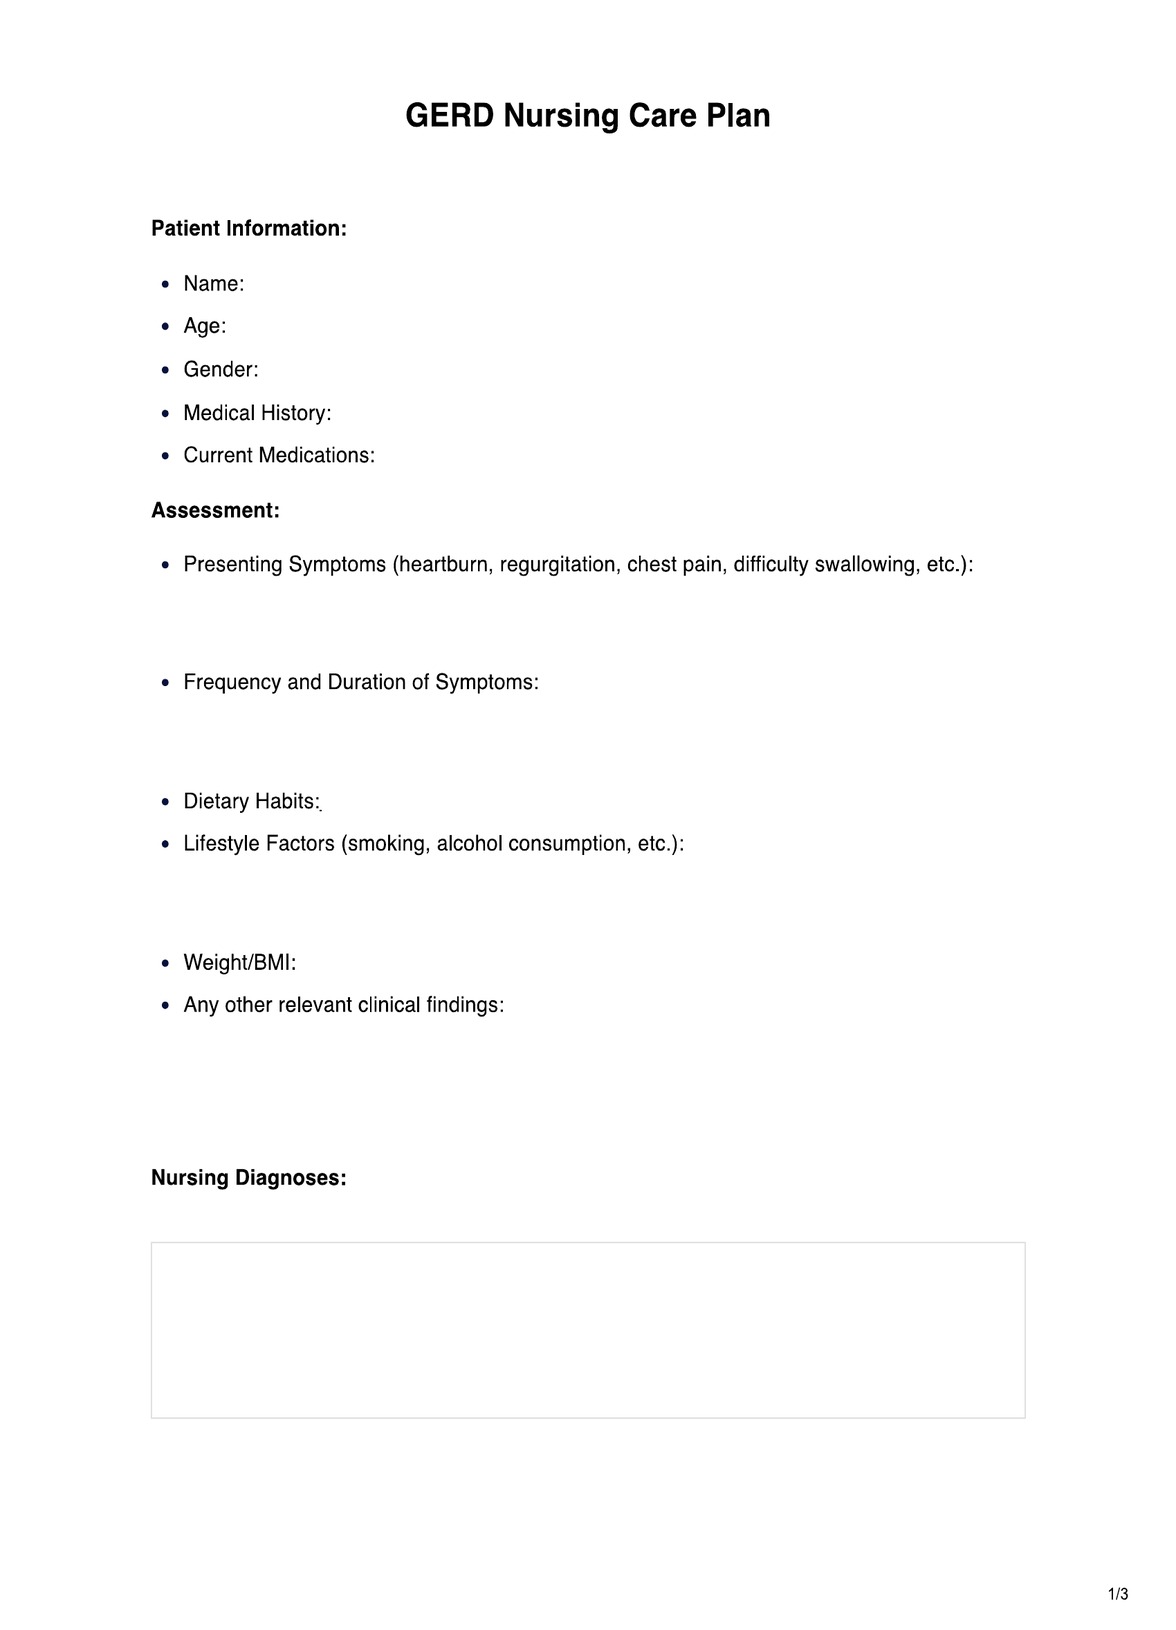 Gerd Nursing Care Plan PDF Example